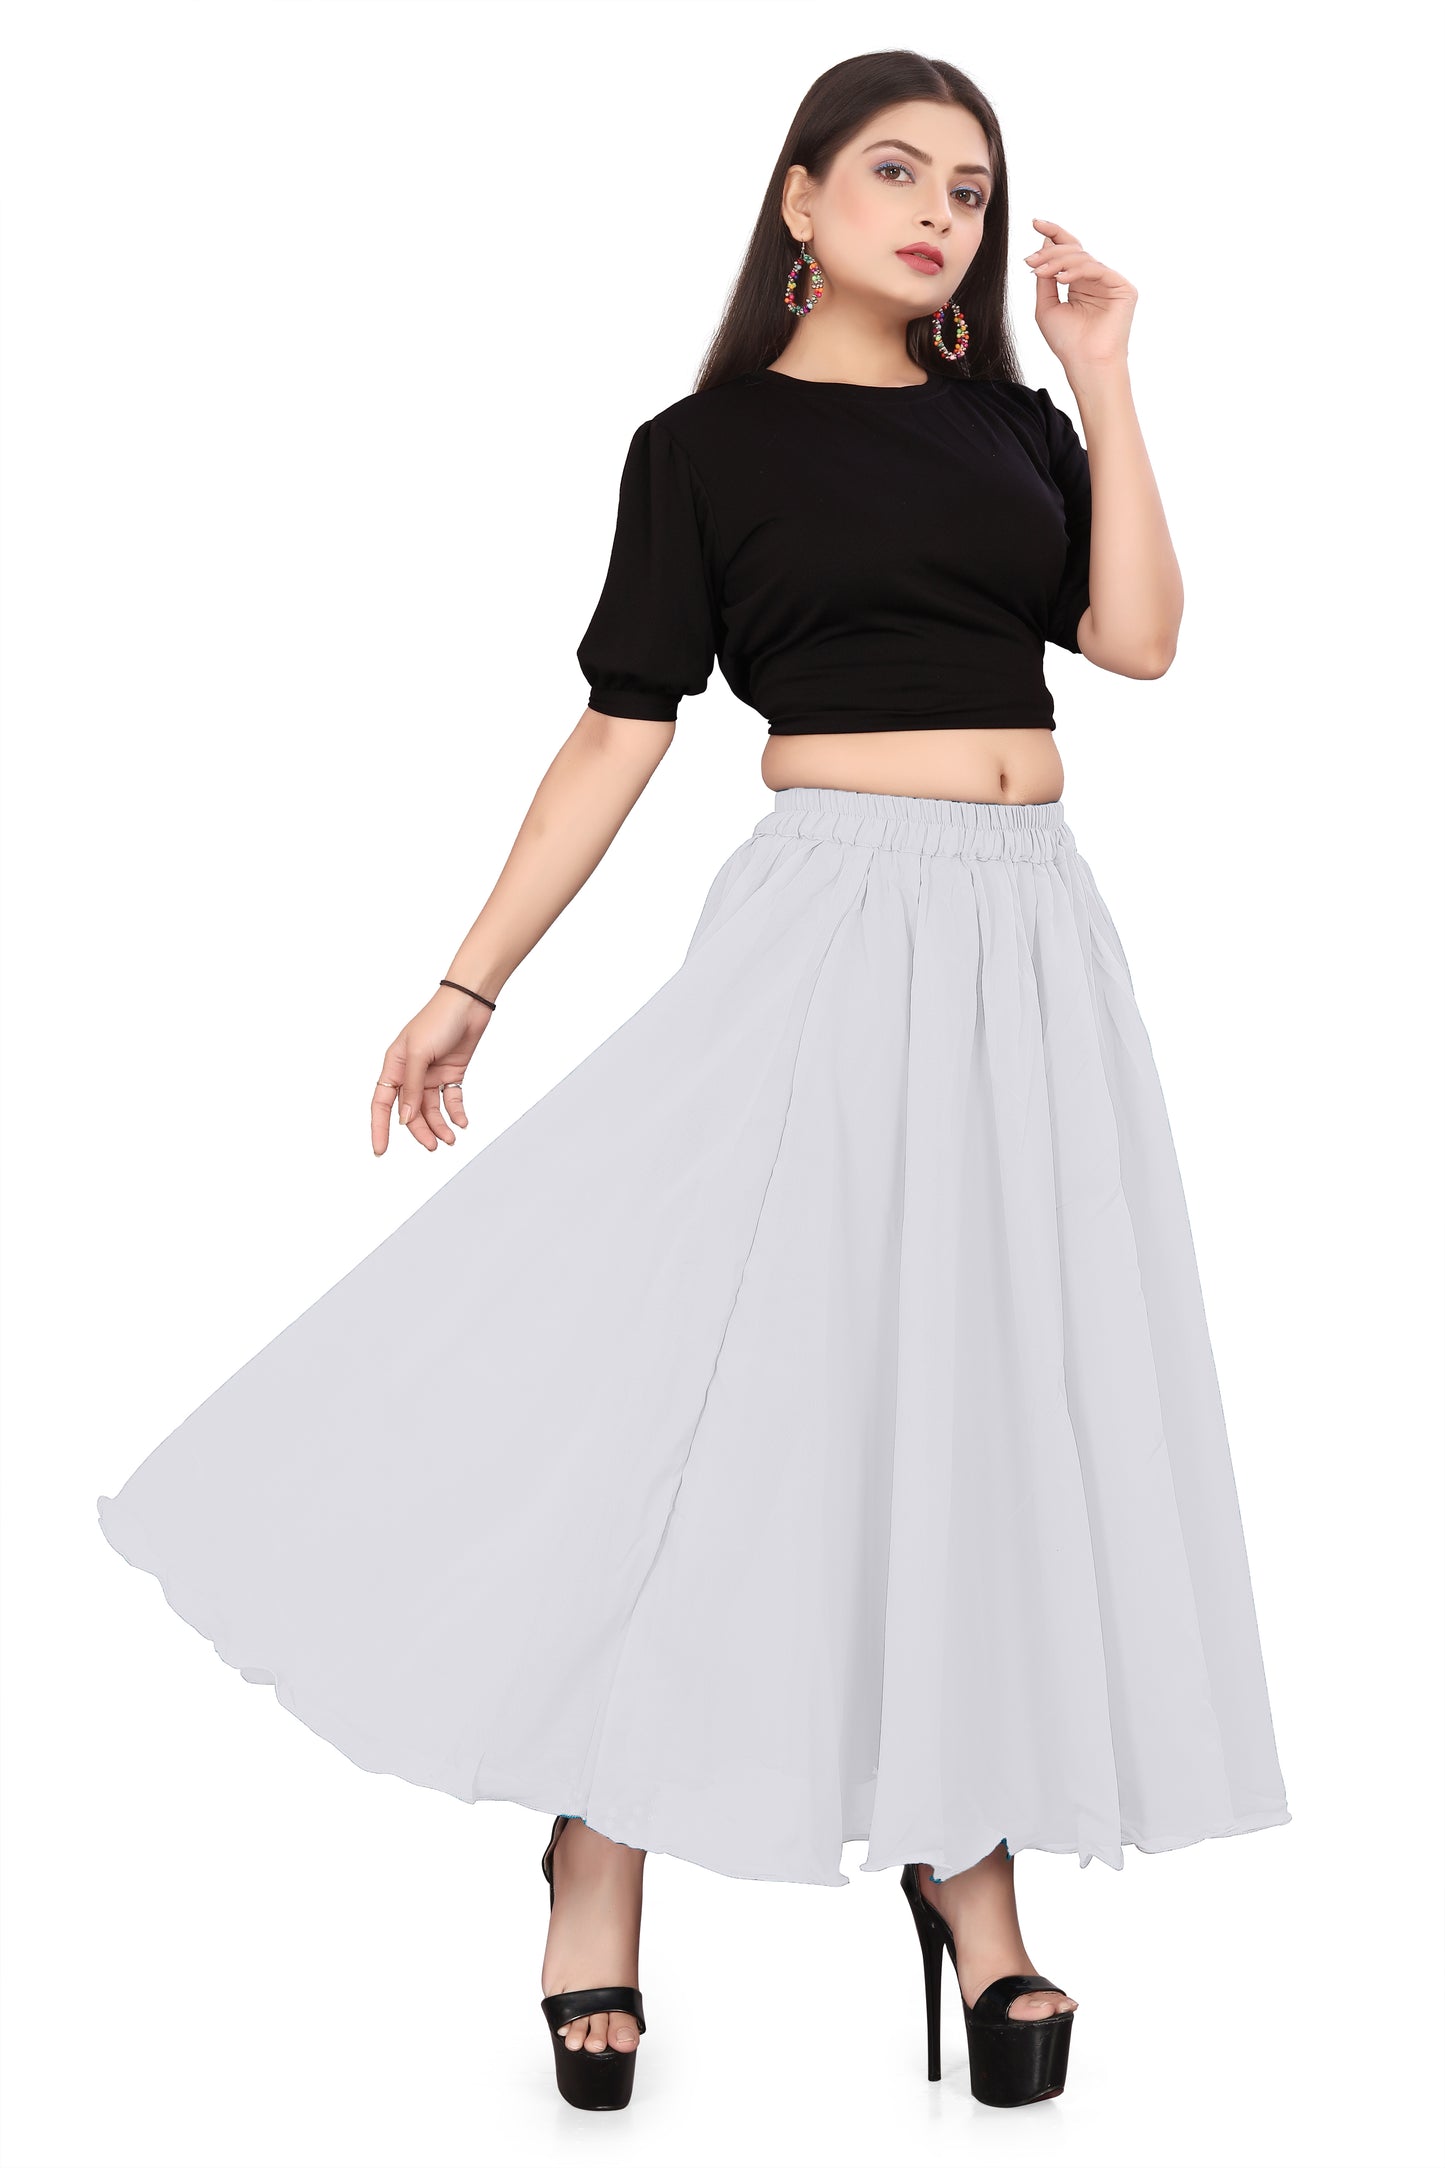 Ballet Dance Skirt C43 - Regular Size 2